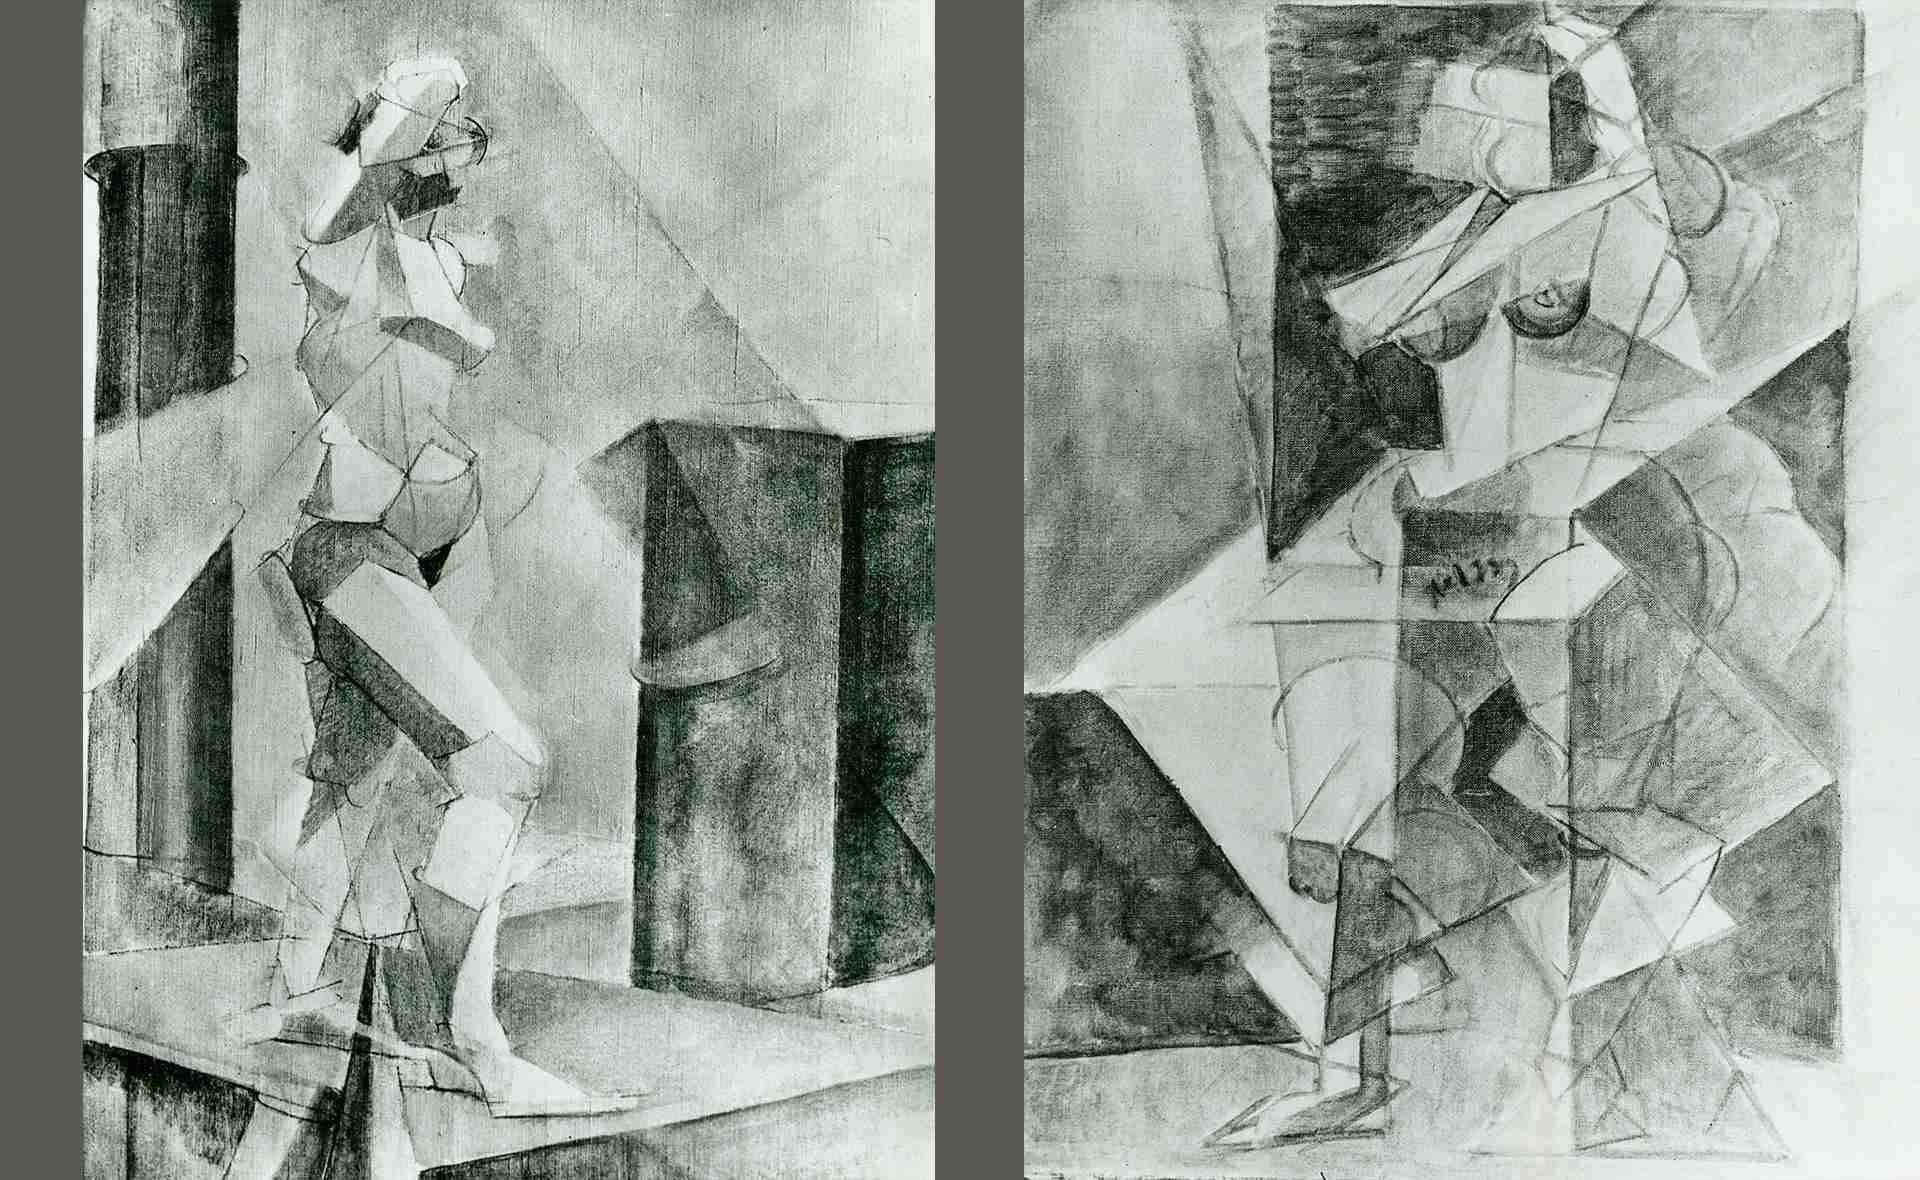 FARKAS ISTVÁN : Kubista akt, 1912–1914, olaj, vászon, elveszett, © MTA, Bölcsészettudományi Kutatóközpont Művészettörténeti Intézet, Adattár, Budapest